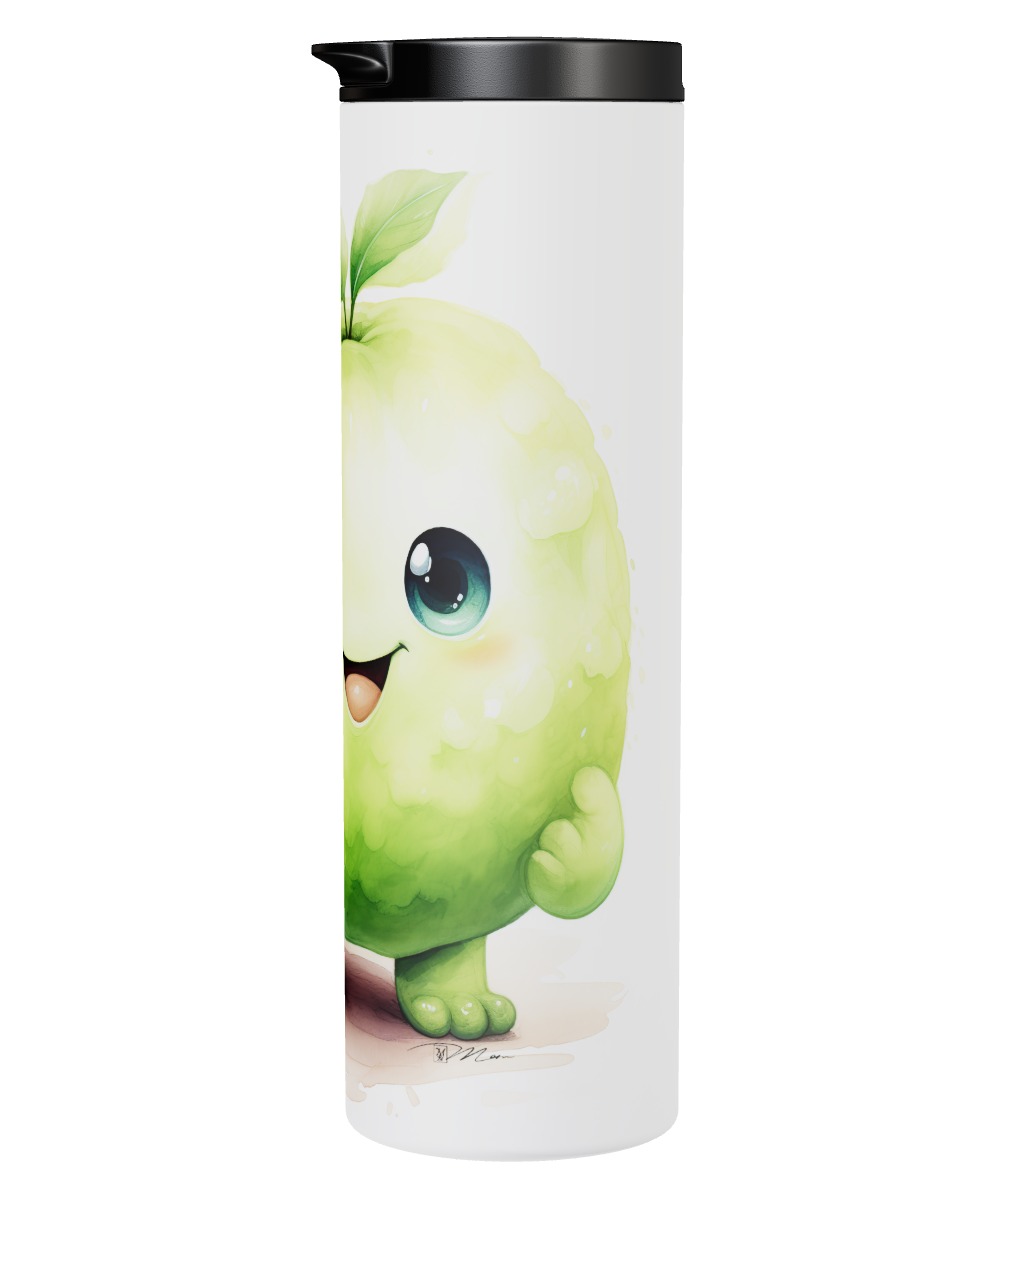 Fruit Monster - Standing Apple